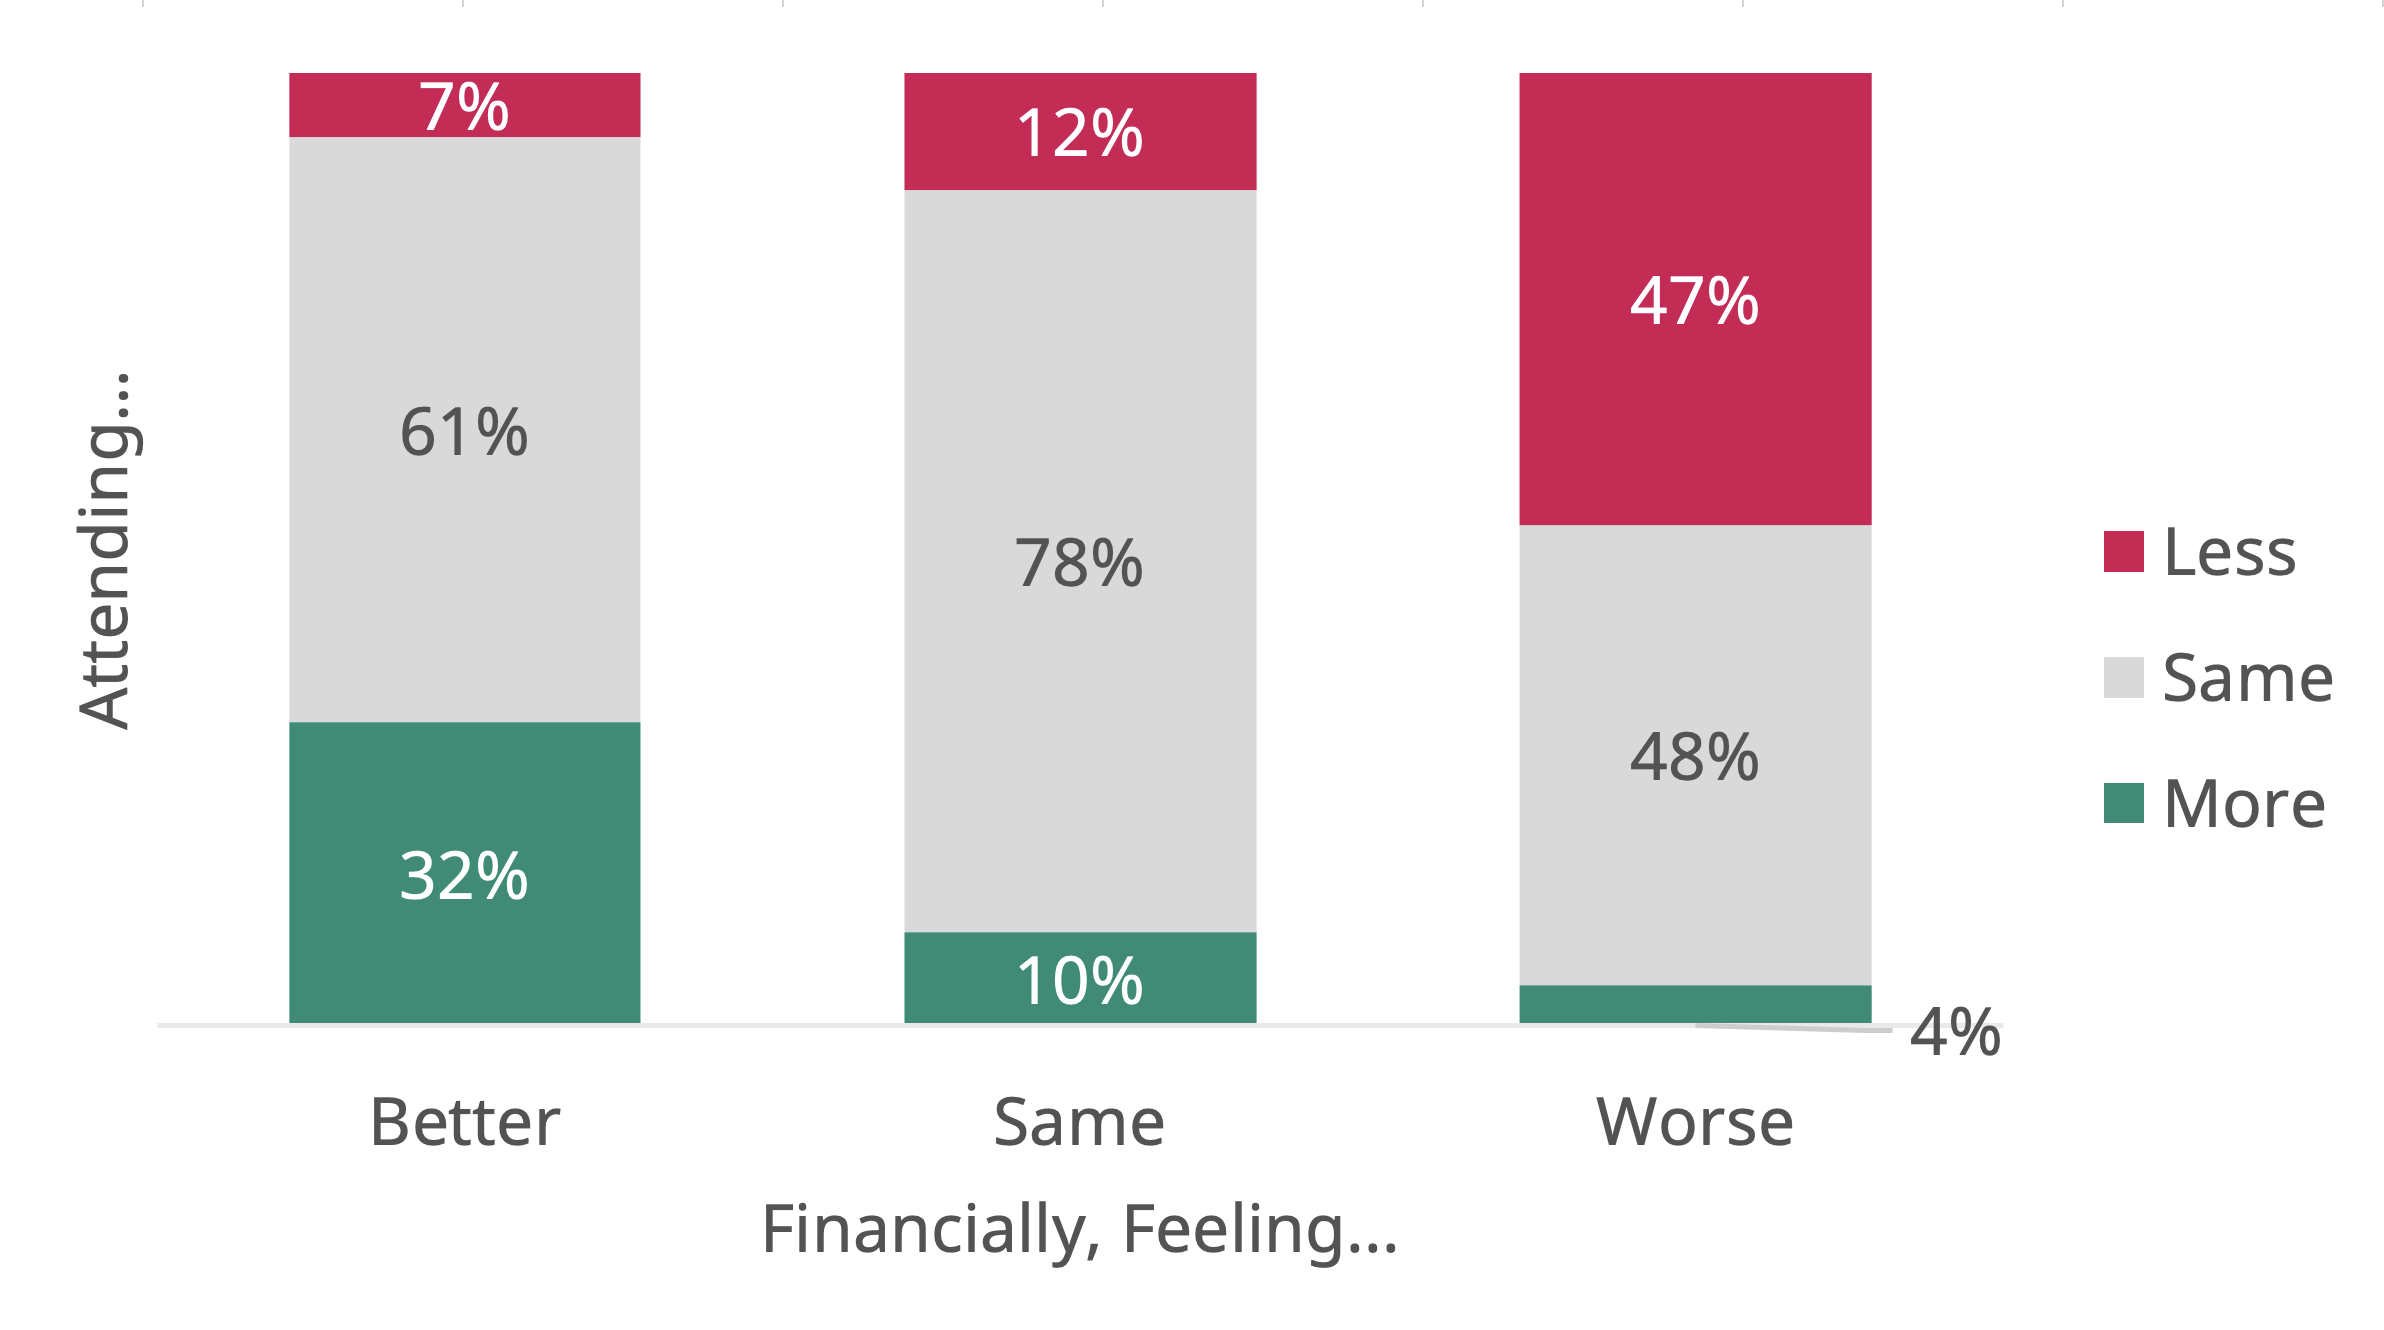 Financially Feeling Better Same Worse vs Attending Less Same More